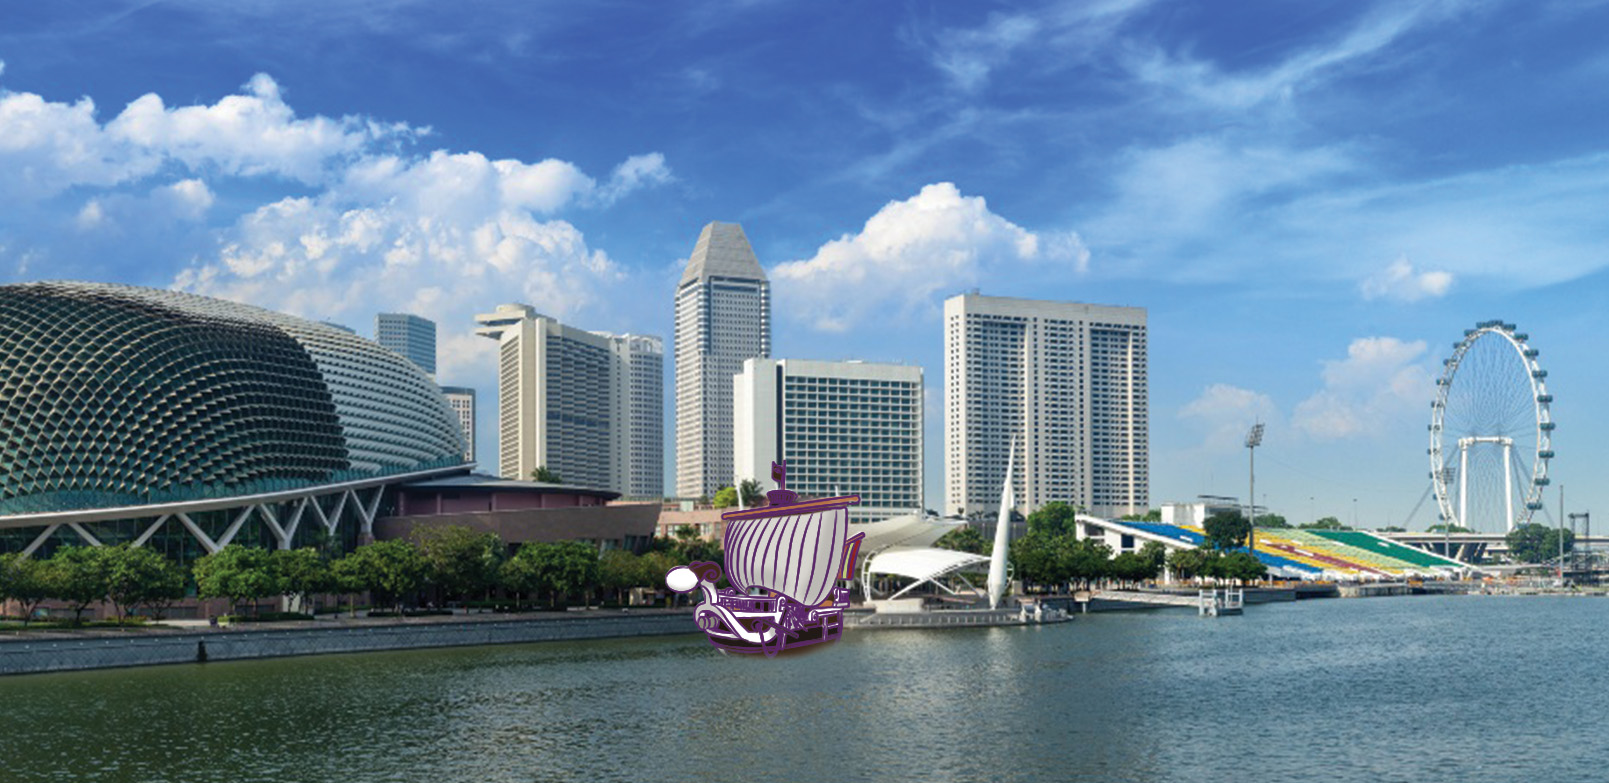 Kalau anggota Bajak Laut Topi Jerami itu nyata, destinasi manakah yang akan mereka kunjungi di Singapura?